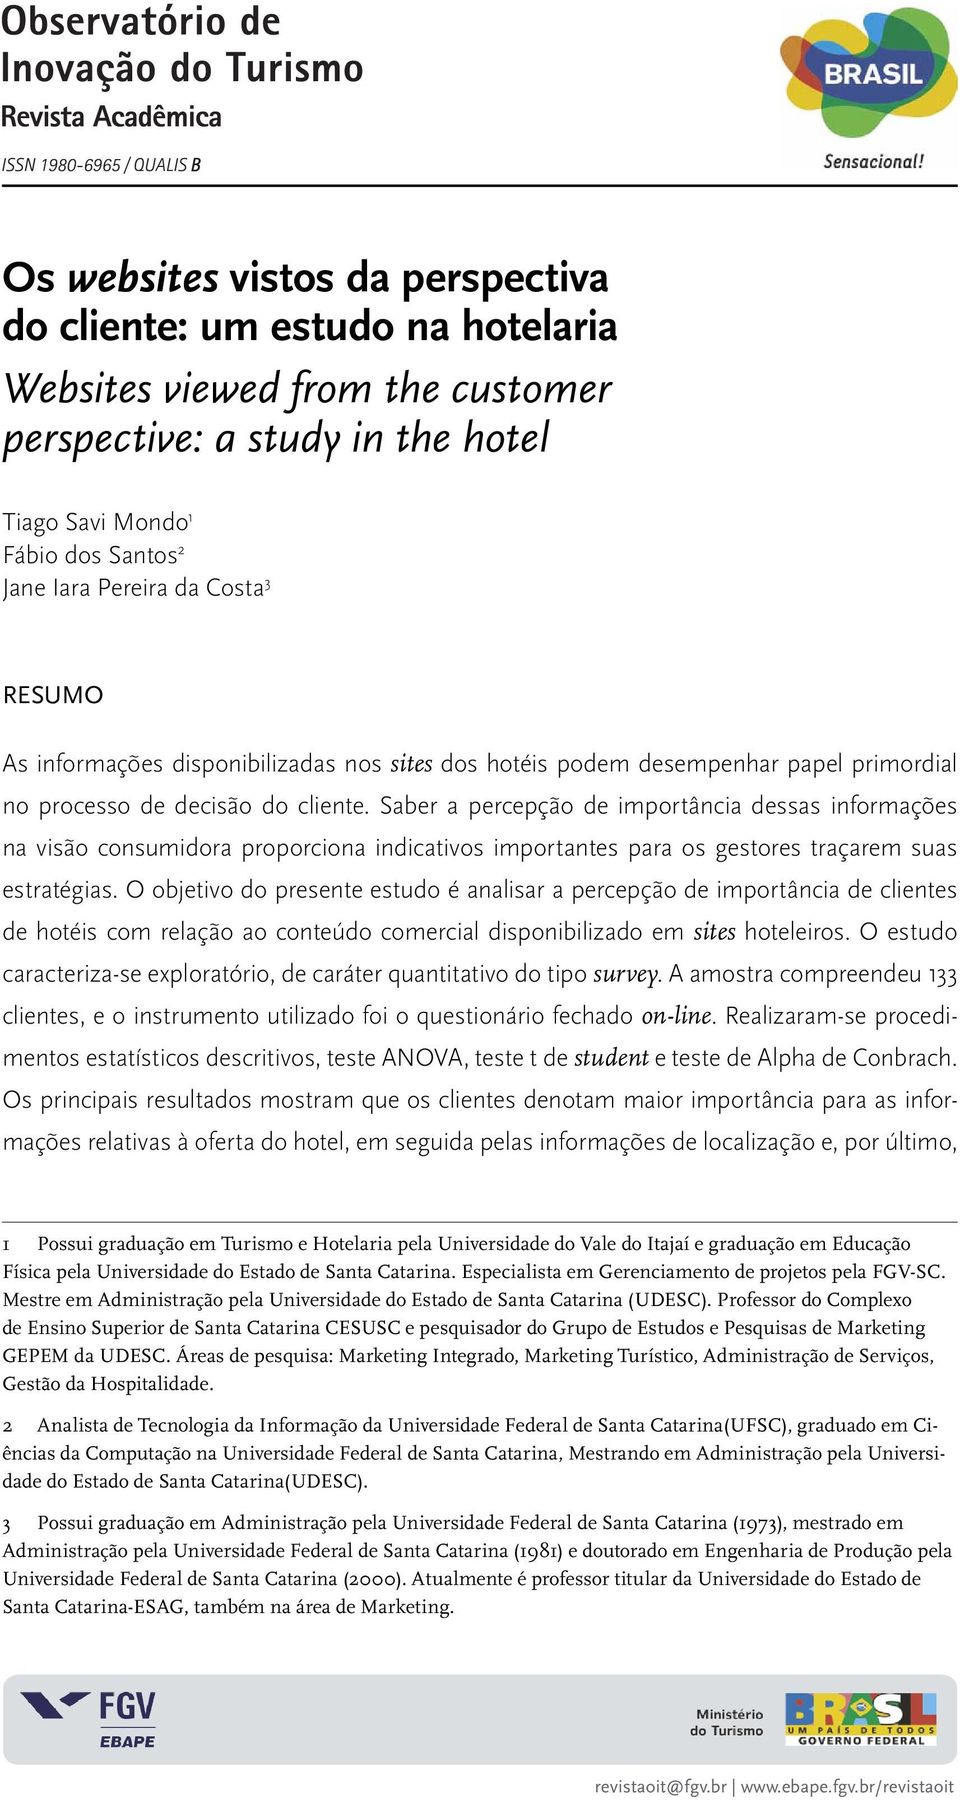 O objetivo do presente estudo é analisar a percepção de importância de clientes de hotéis com relação ao conteúdo comercial disponibilizado em sites hoteleiros.